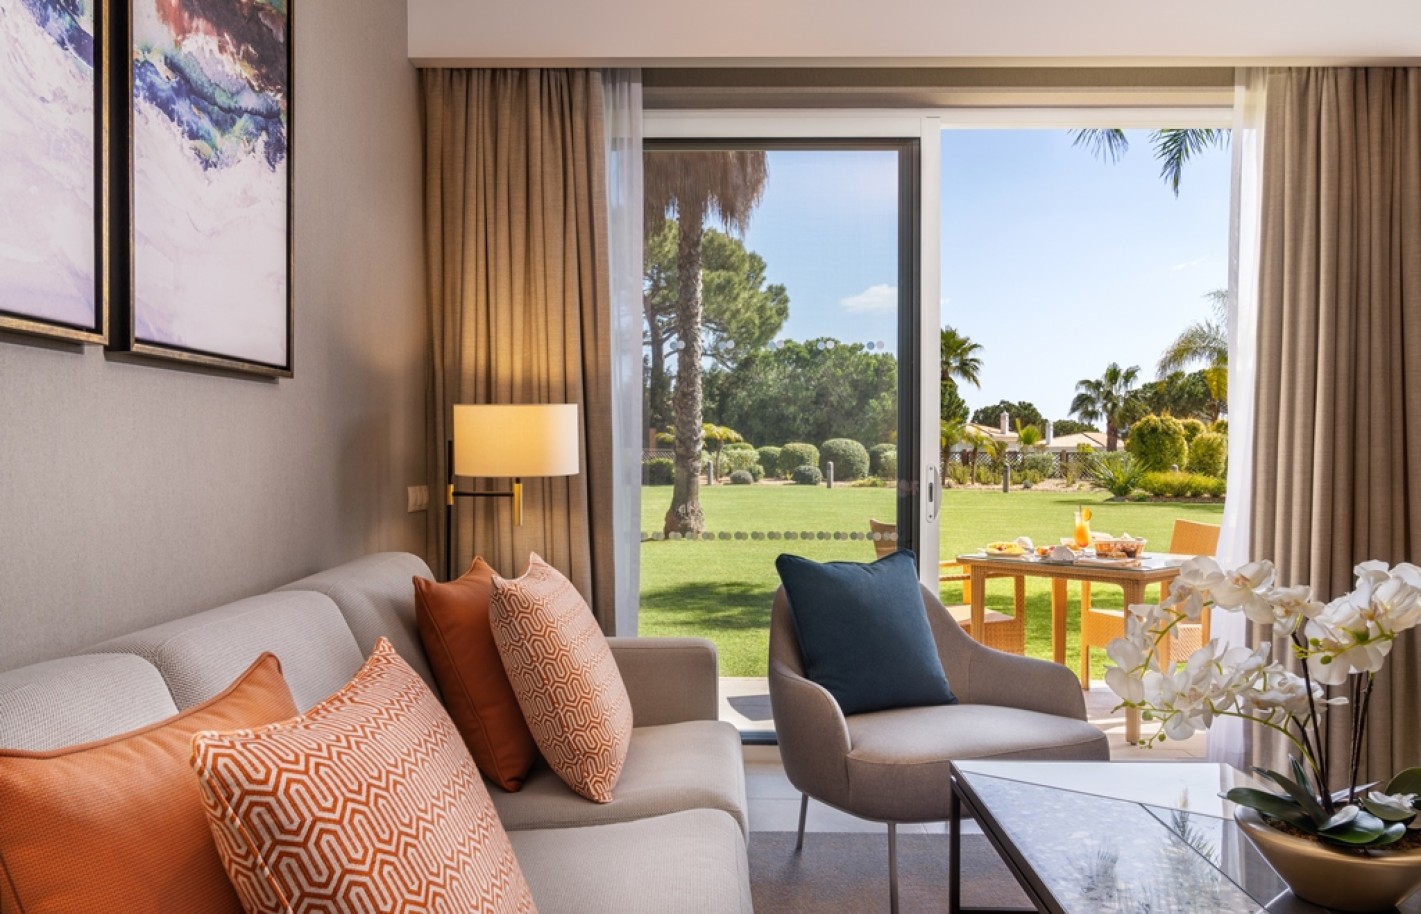 Apartamento, 2 quartos, piscina, para venda na Quinta do Lago, Algarve_262181